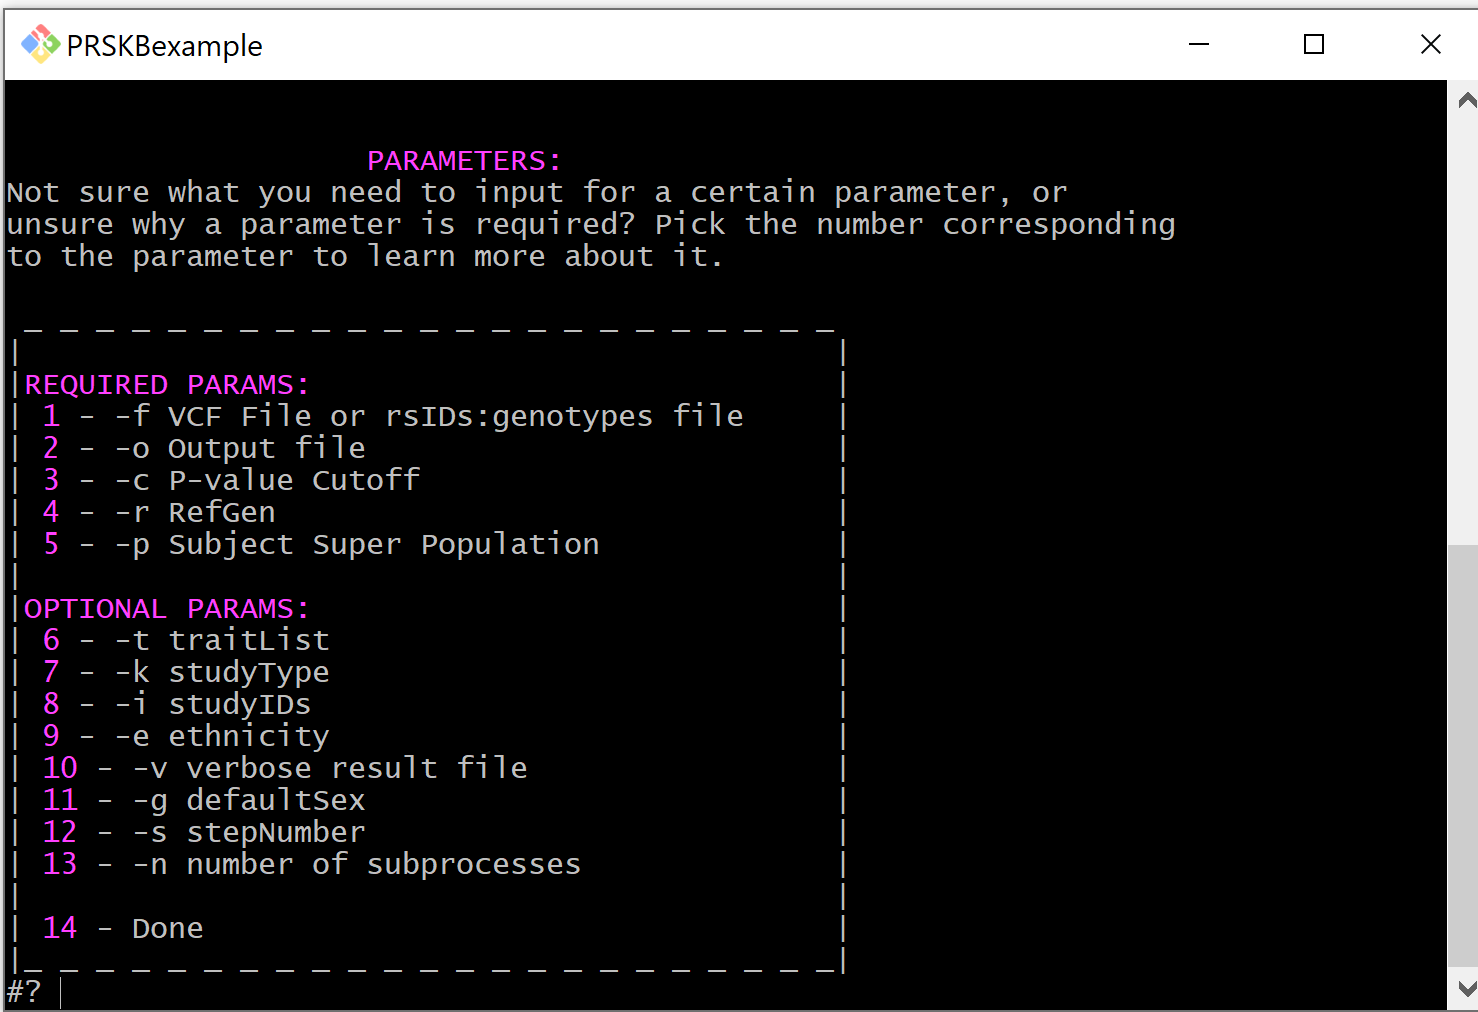 Screen shot of Parameters menu